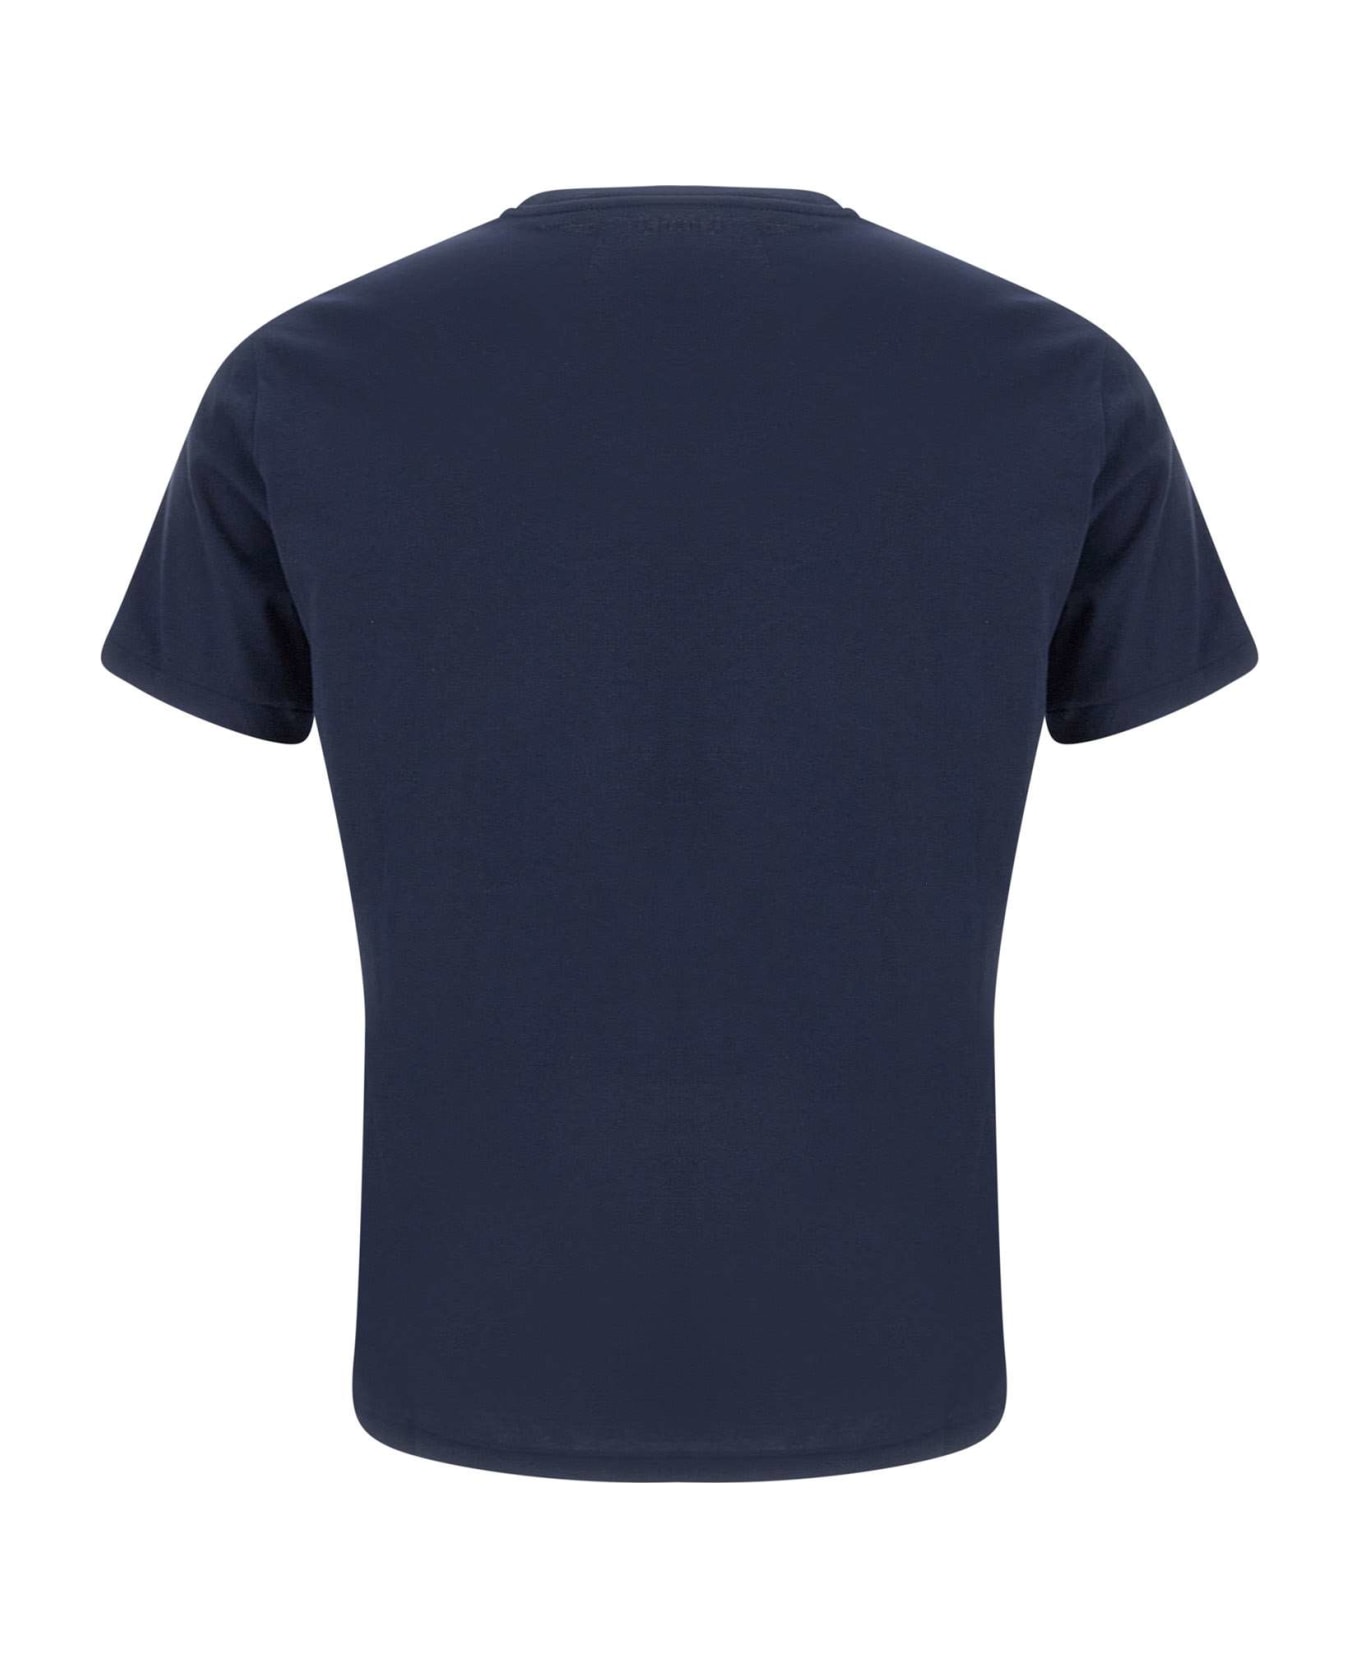 Polo Ralph Lauren Cotton T-shirt - Cruise navy